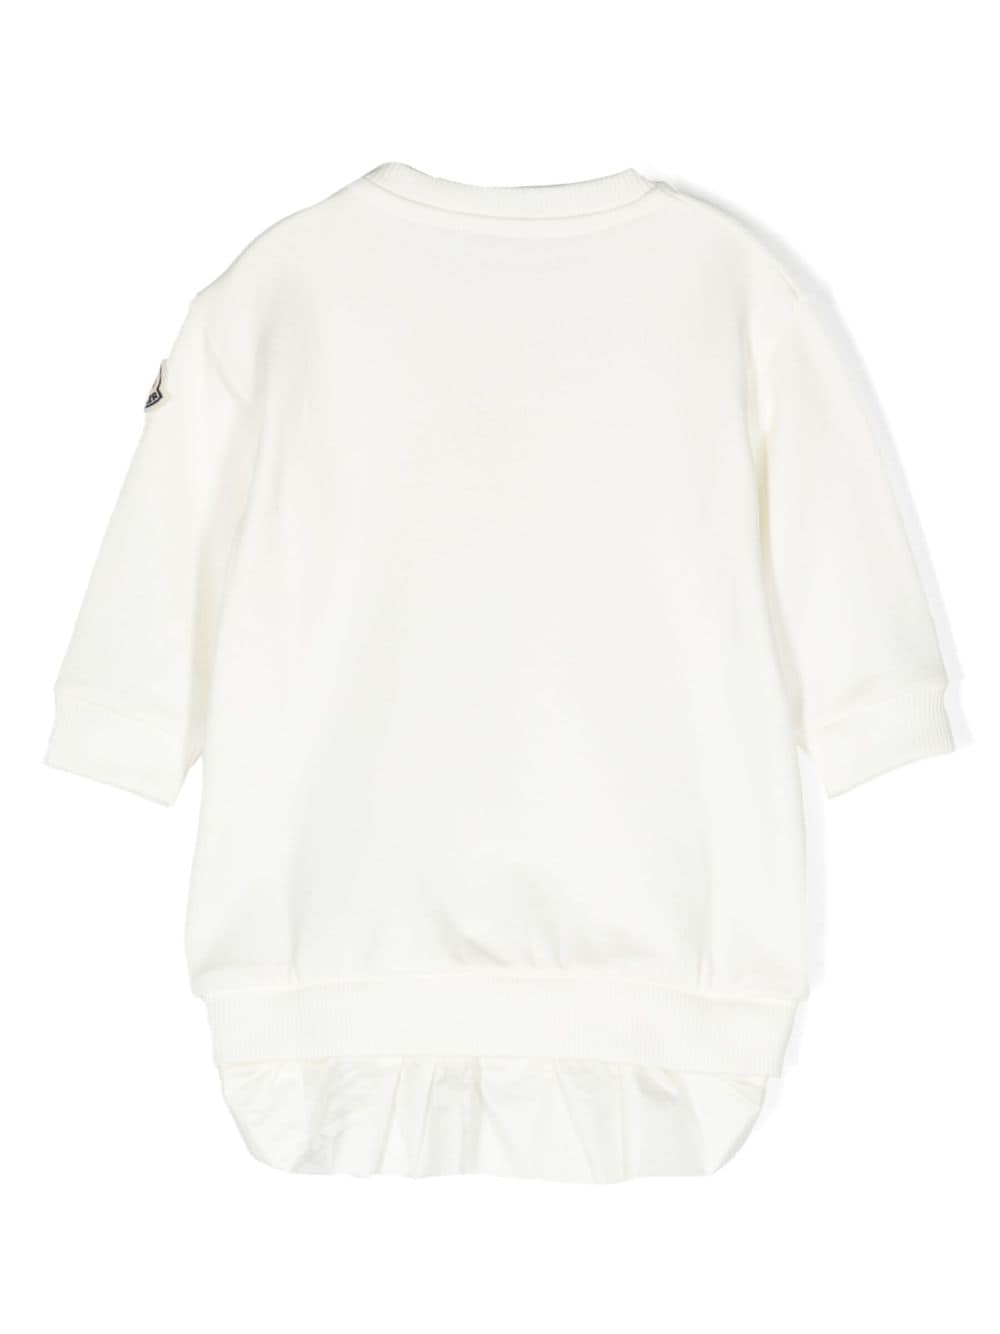 Robe nouveau-né blanche à manches longues et logo appliqué